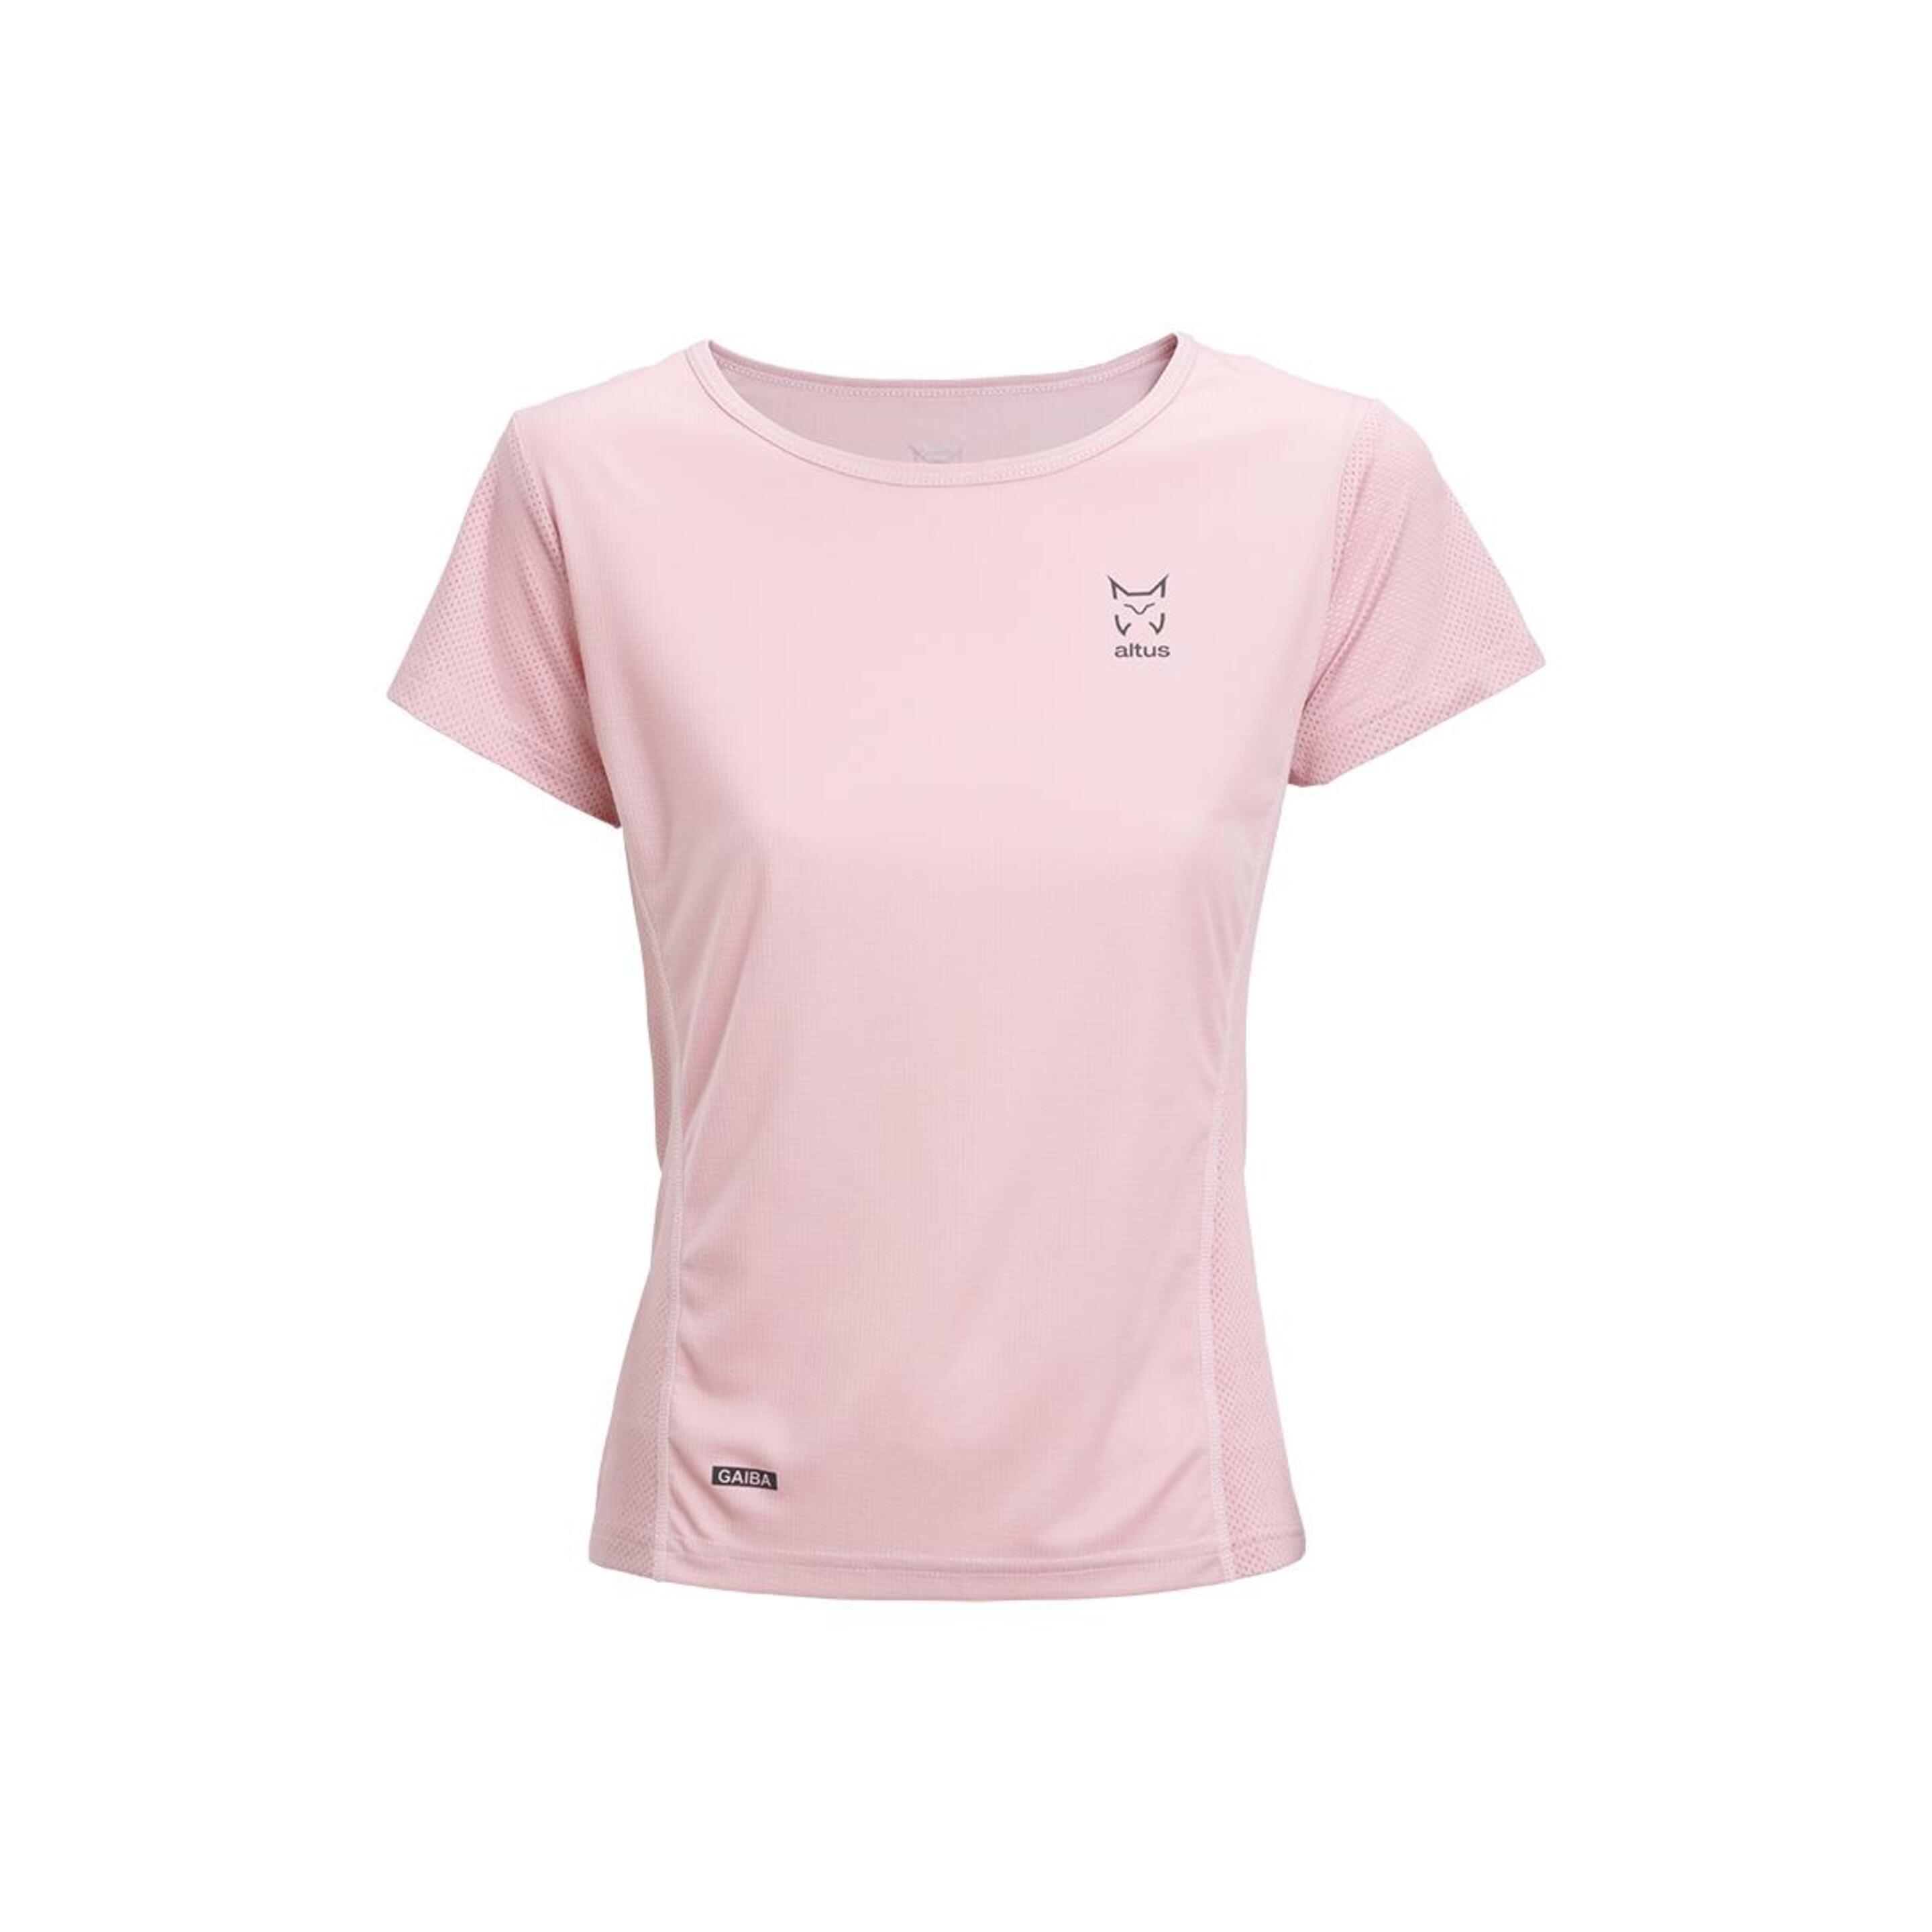 Camiseta Altus Gaiba - rosa - 